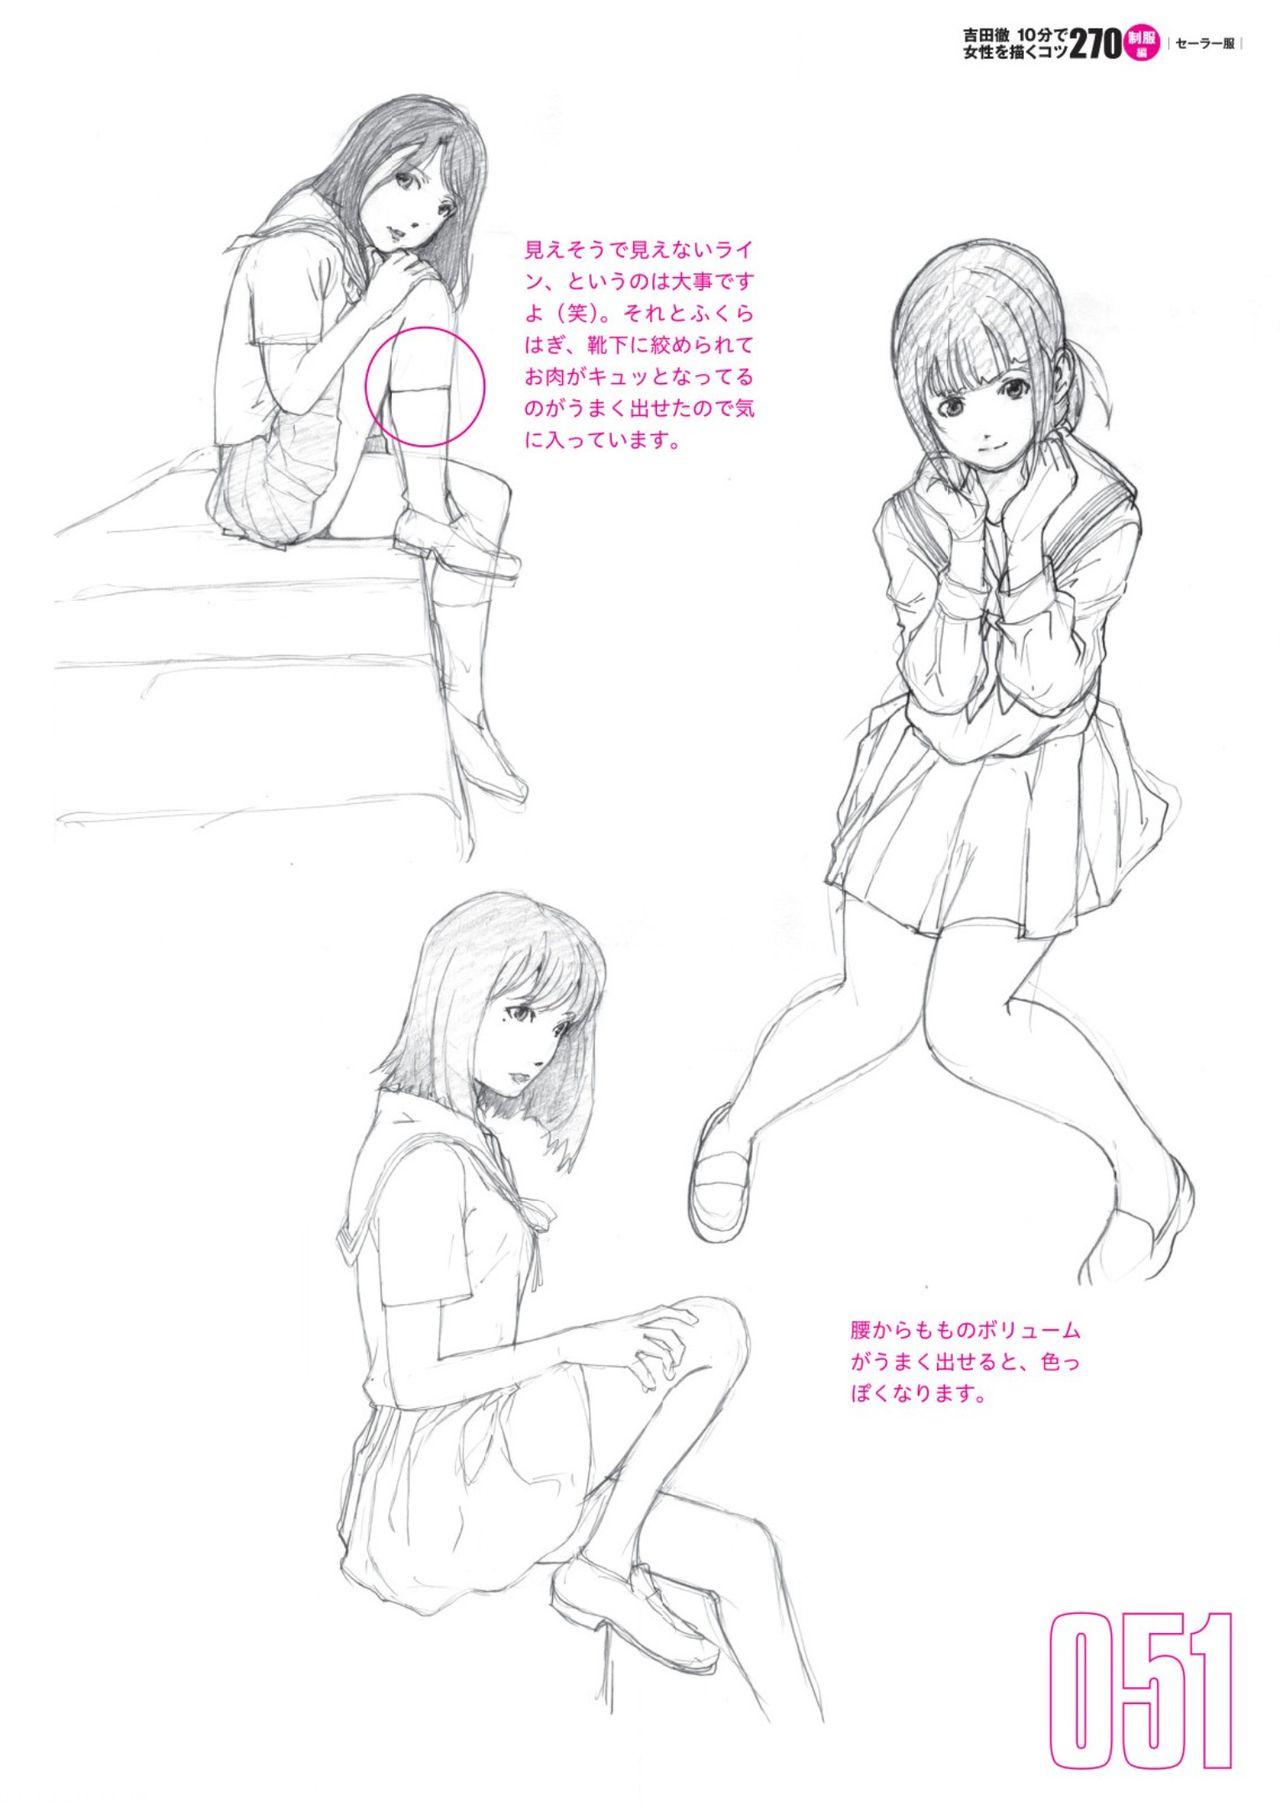 Toru Yoshida Tips for drawing women in 10 minutes 270 Uniforms 52